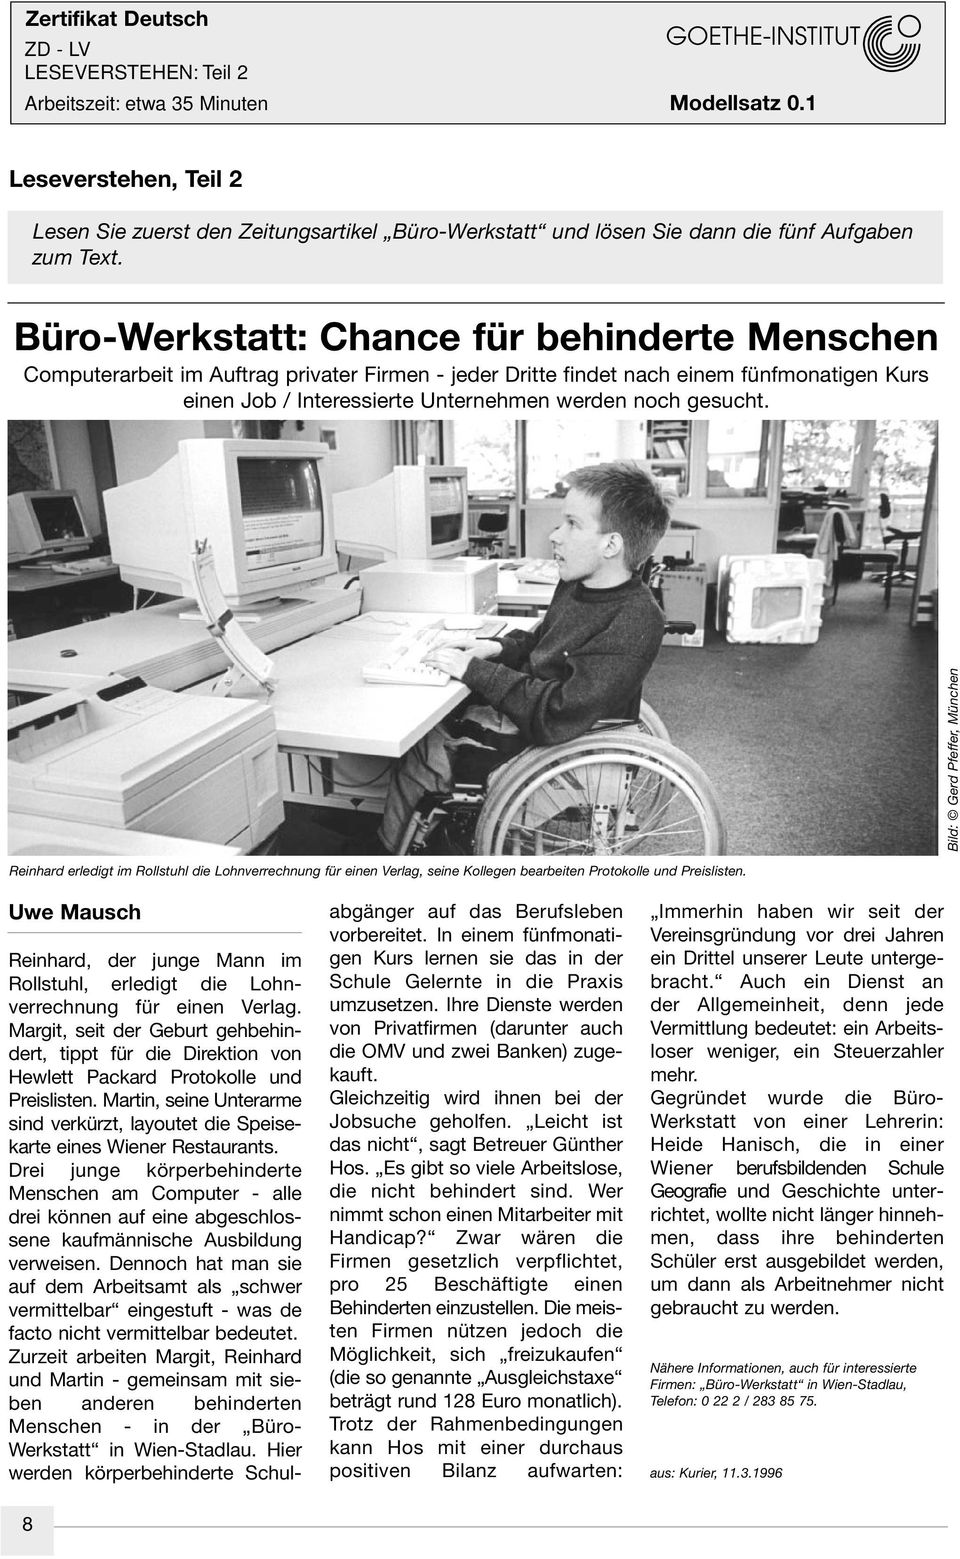 Bild: Gerd Pfeffer, München Reinhard erledigt im Rollstuhl die Lohnverrechnung für einen Verlag, seine Kollegen bearbeiten Protokolle und Preislisten.